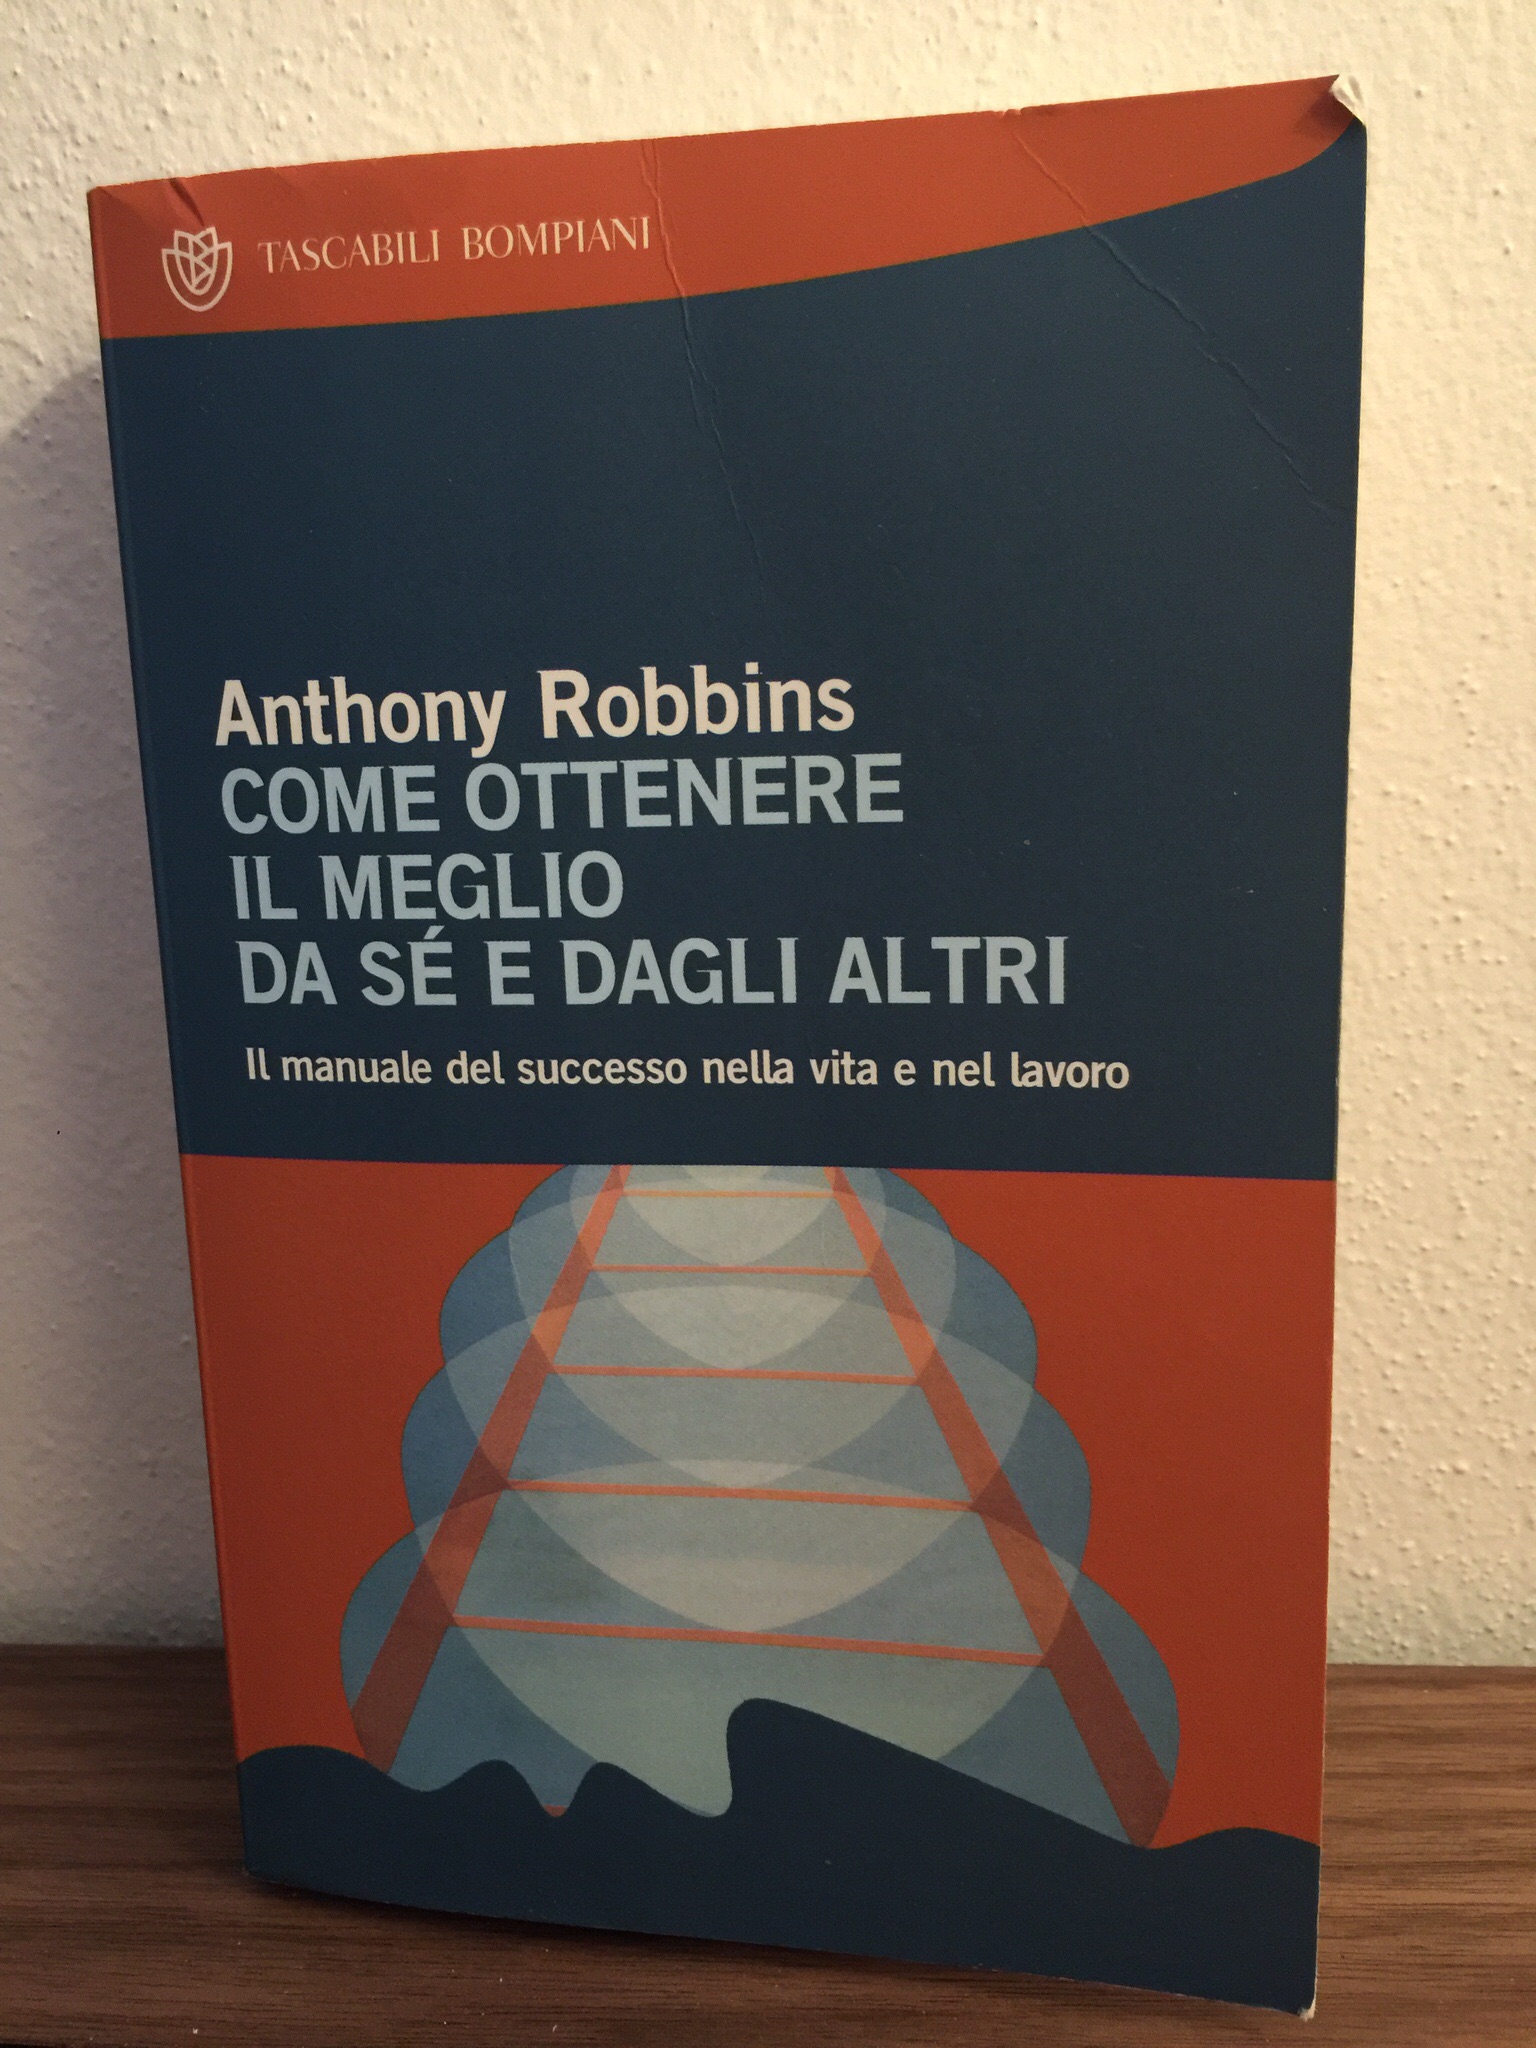 Anthony Robbins – Come ottenere il meglio da sè e dagli altri